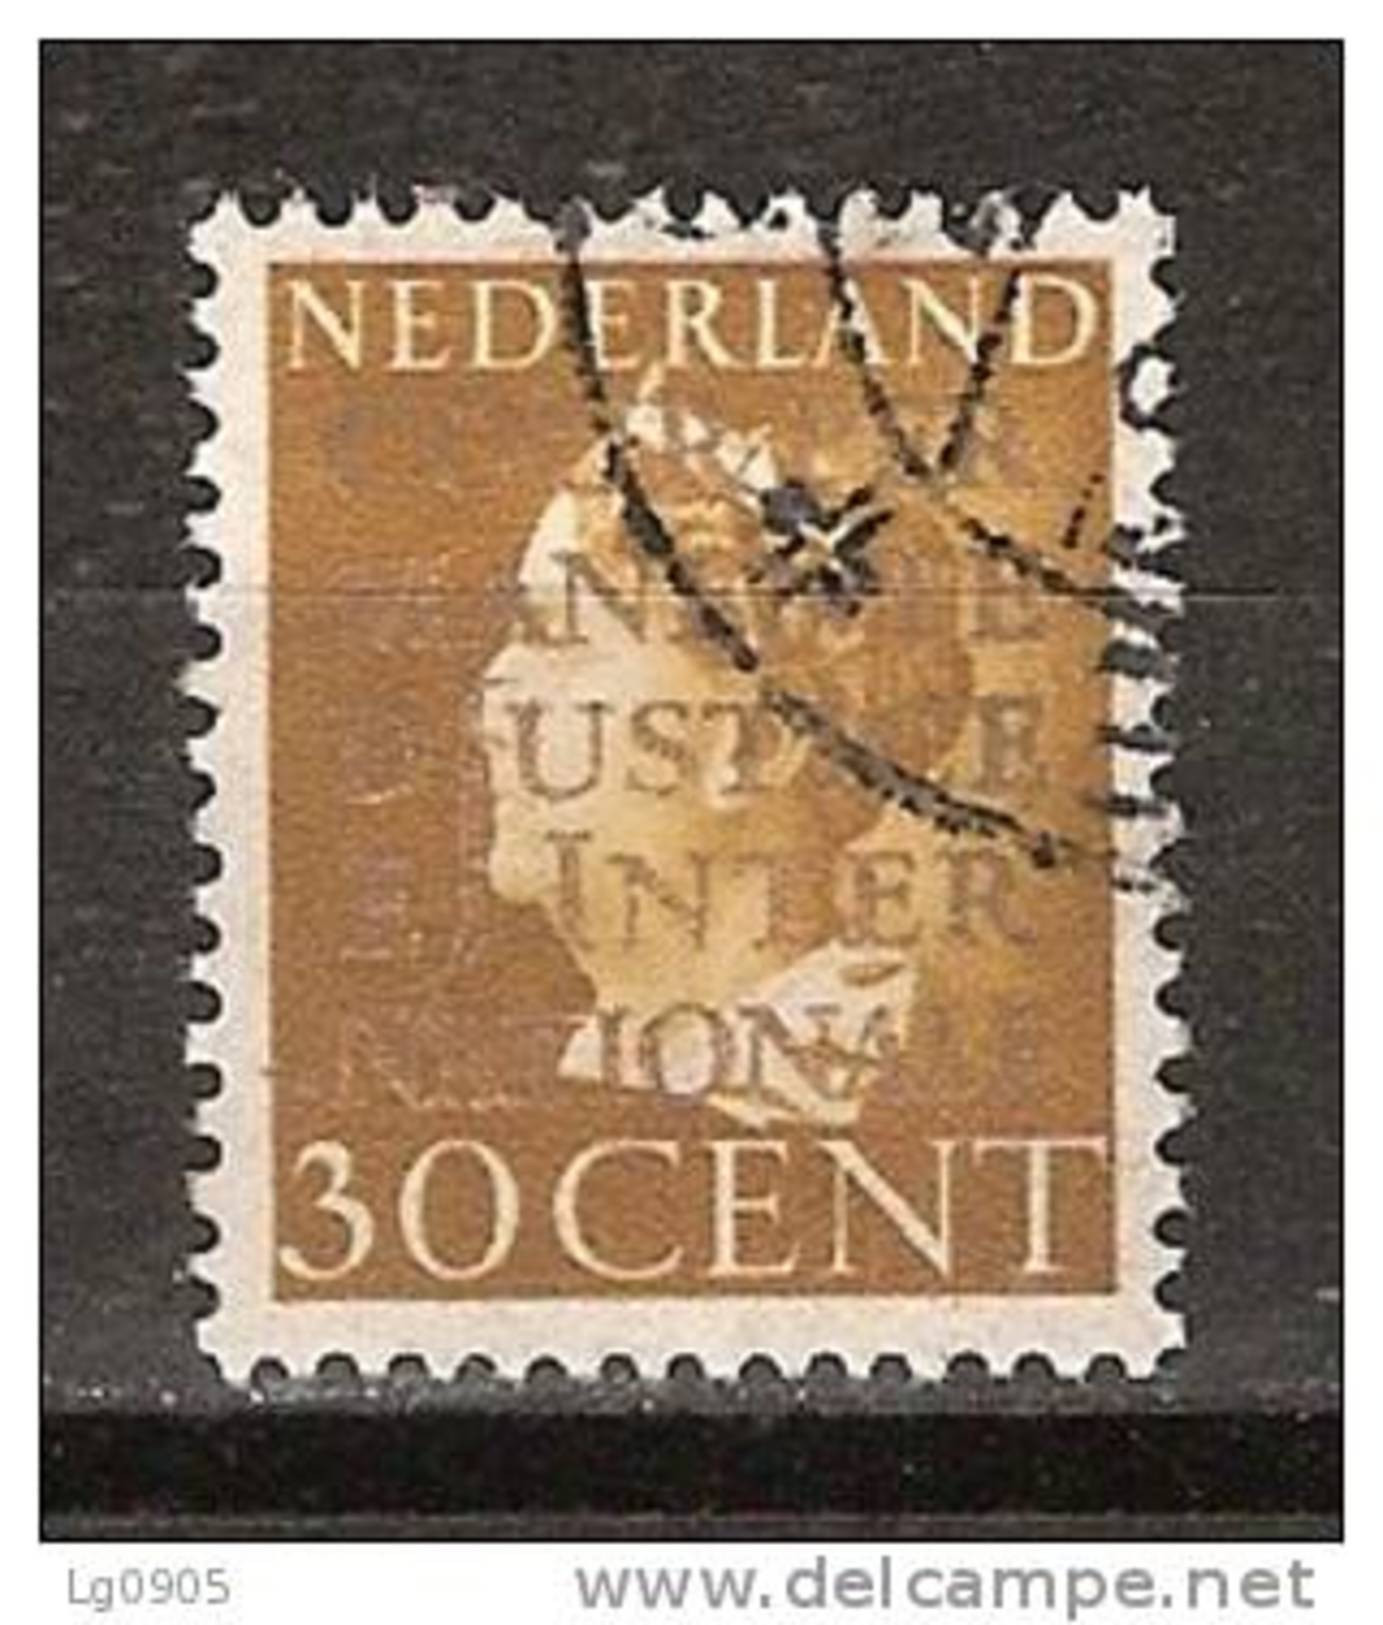 Nederland Netherlands Pays Bas Niederlande Holanda 19 Used Dienstzegel, Service Stamp, Timbre Cour, Sello Oficio - Dienstzegels